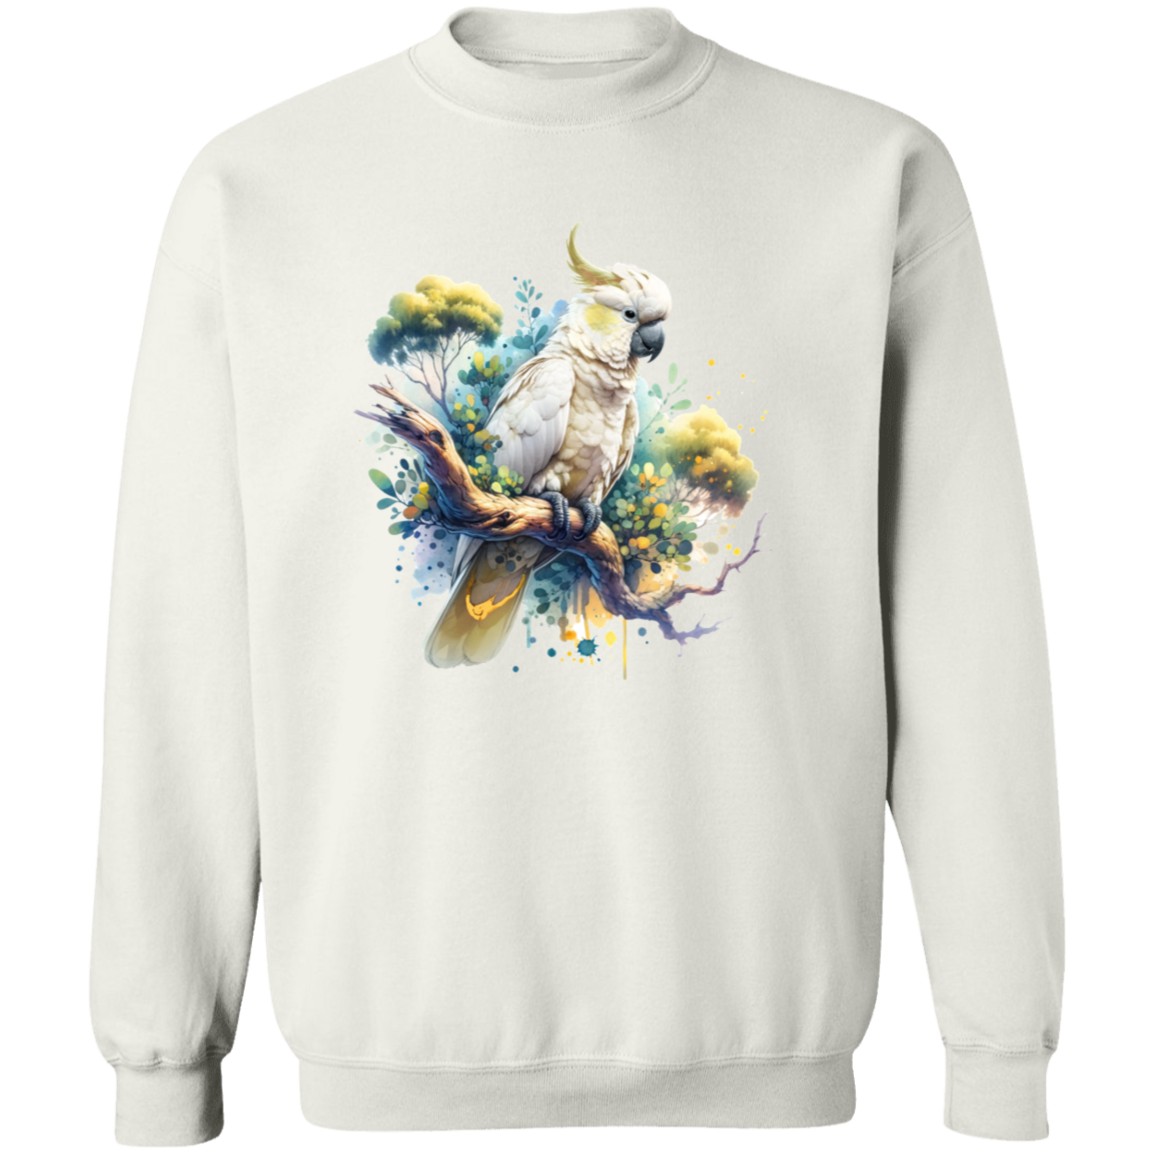 Cockatoo in Tree - T-shirts, Hoodies and Sweatshirts